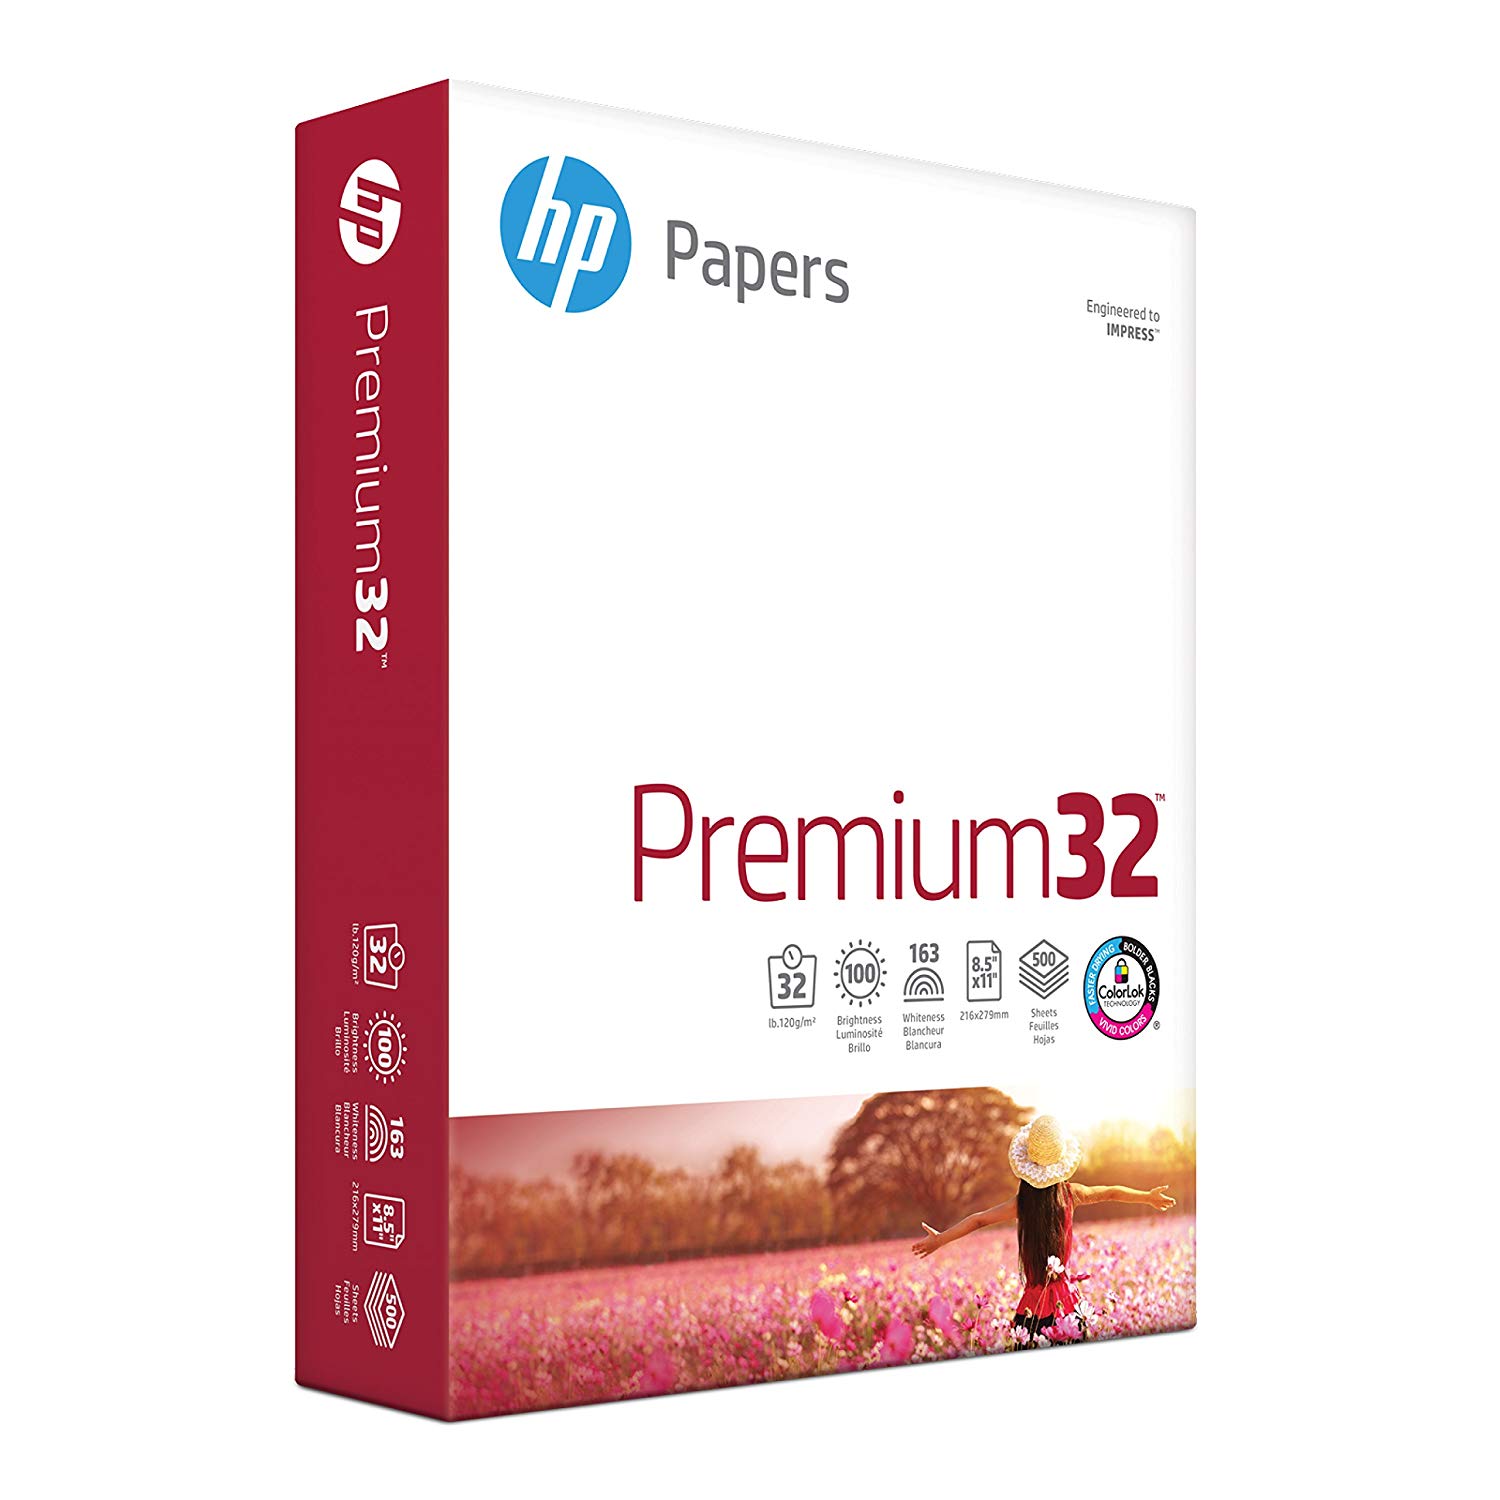 Papel para Impresora HP, Papel Premium32, 8.5 x 11, Tamaño Carta, Papel de 32 lb, 100 Brillantes, 1 Resma / 500 Hojas, Papel de Presentación, Papel sin Ácido